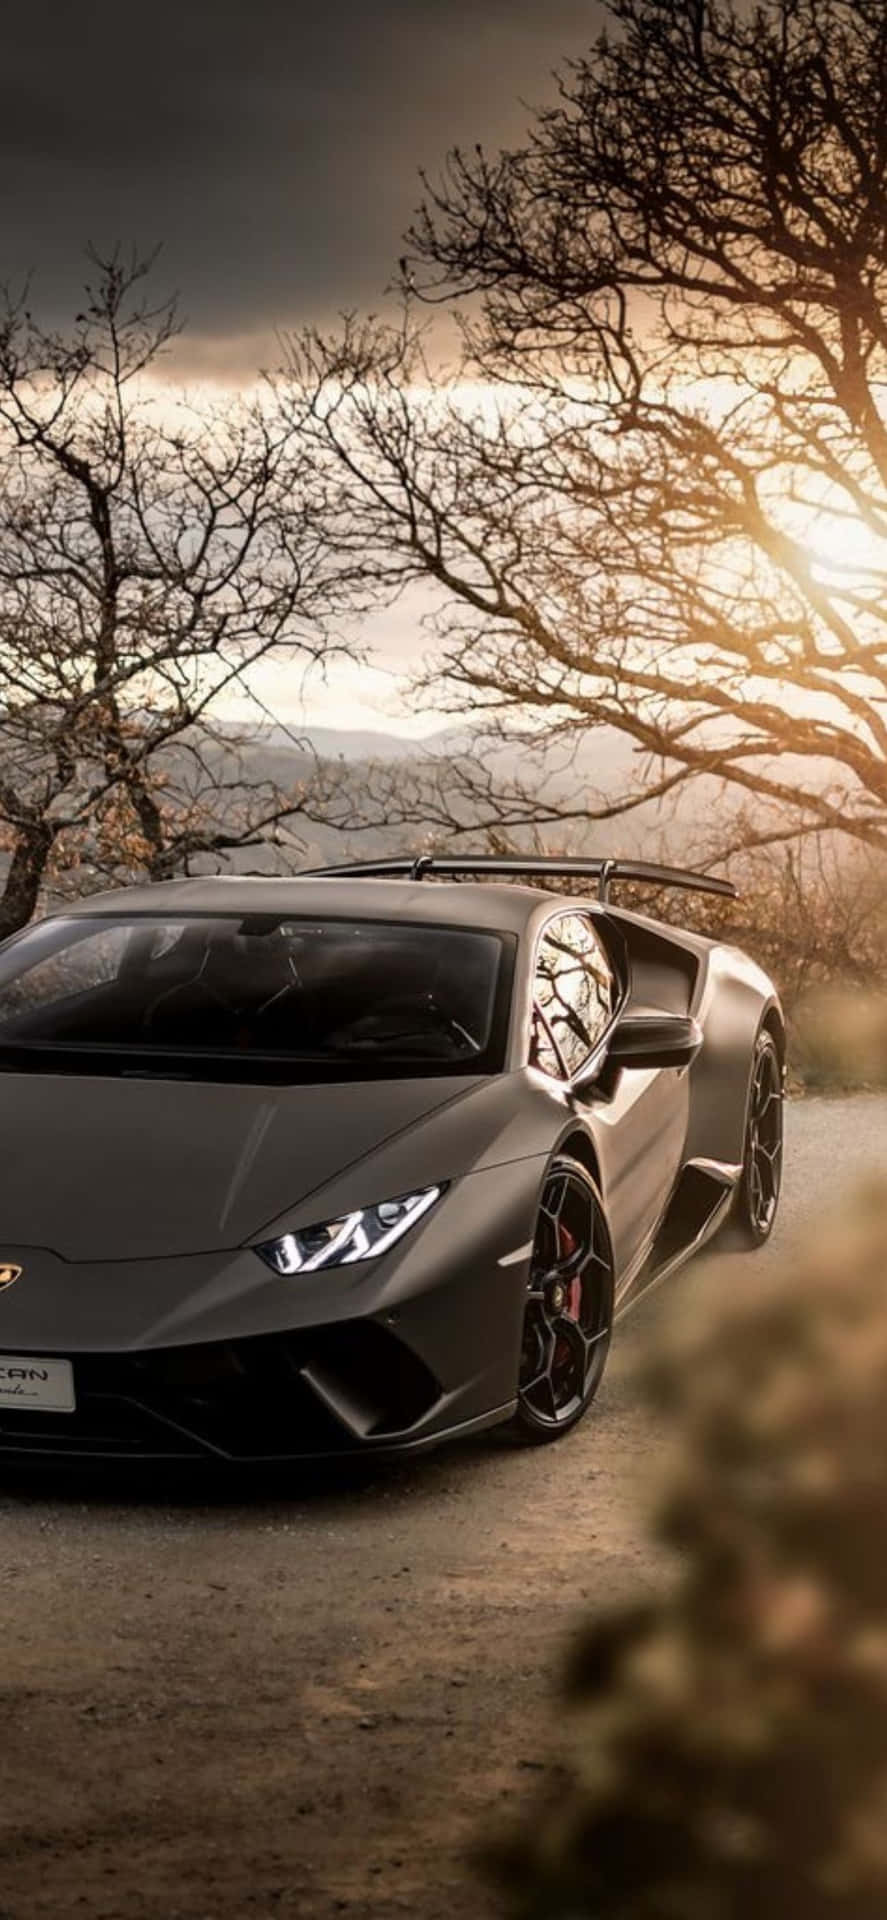 Lamborghini Huracan iPhone 6 Wallpaper | ID: 50212